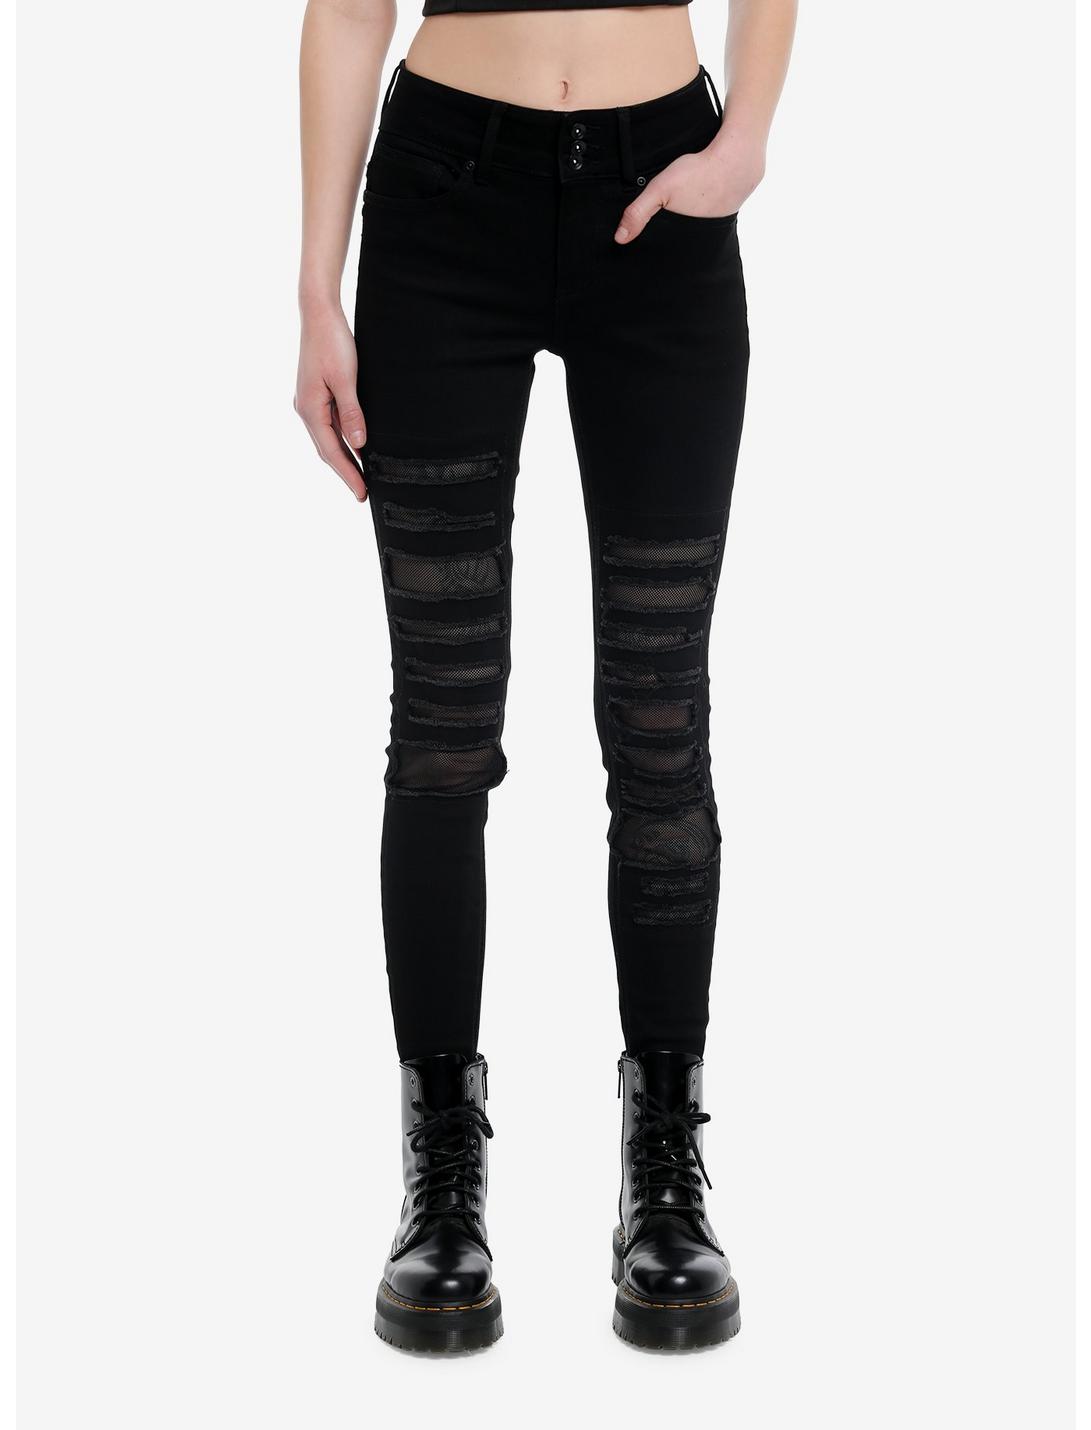 Social Collision® Black Destructed Fishnet Super Skinny Jeans, BLACK, hi-res